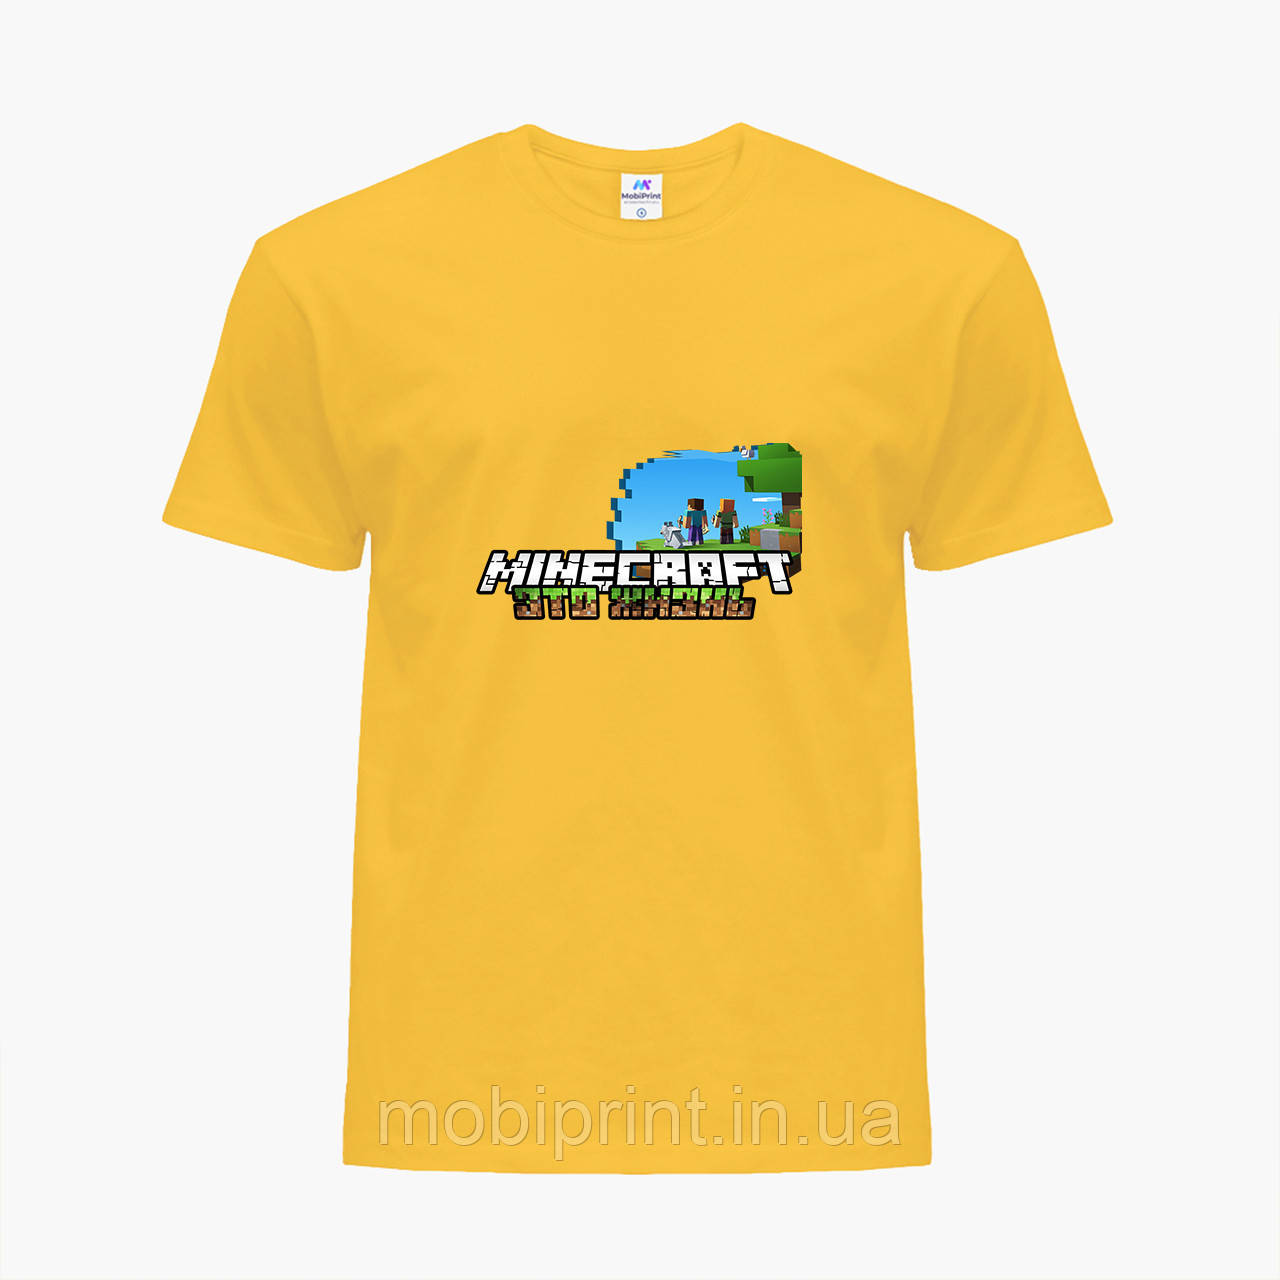 

Детская футболка для мальчиков Майнкрафт (Minecraft) (25186-1170) Желтый 152